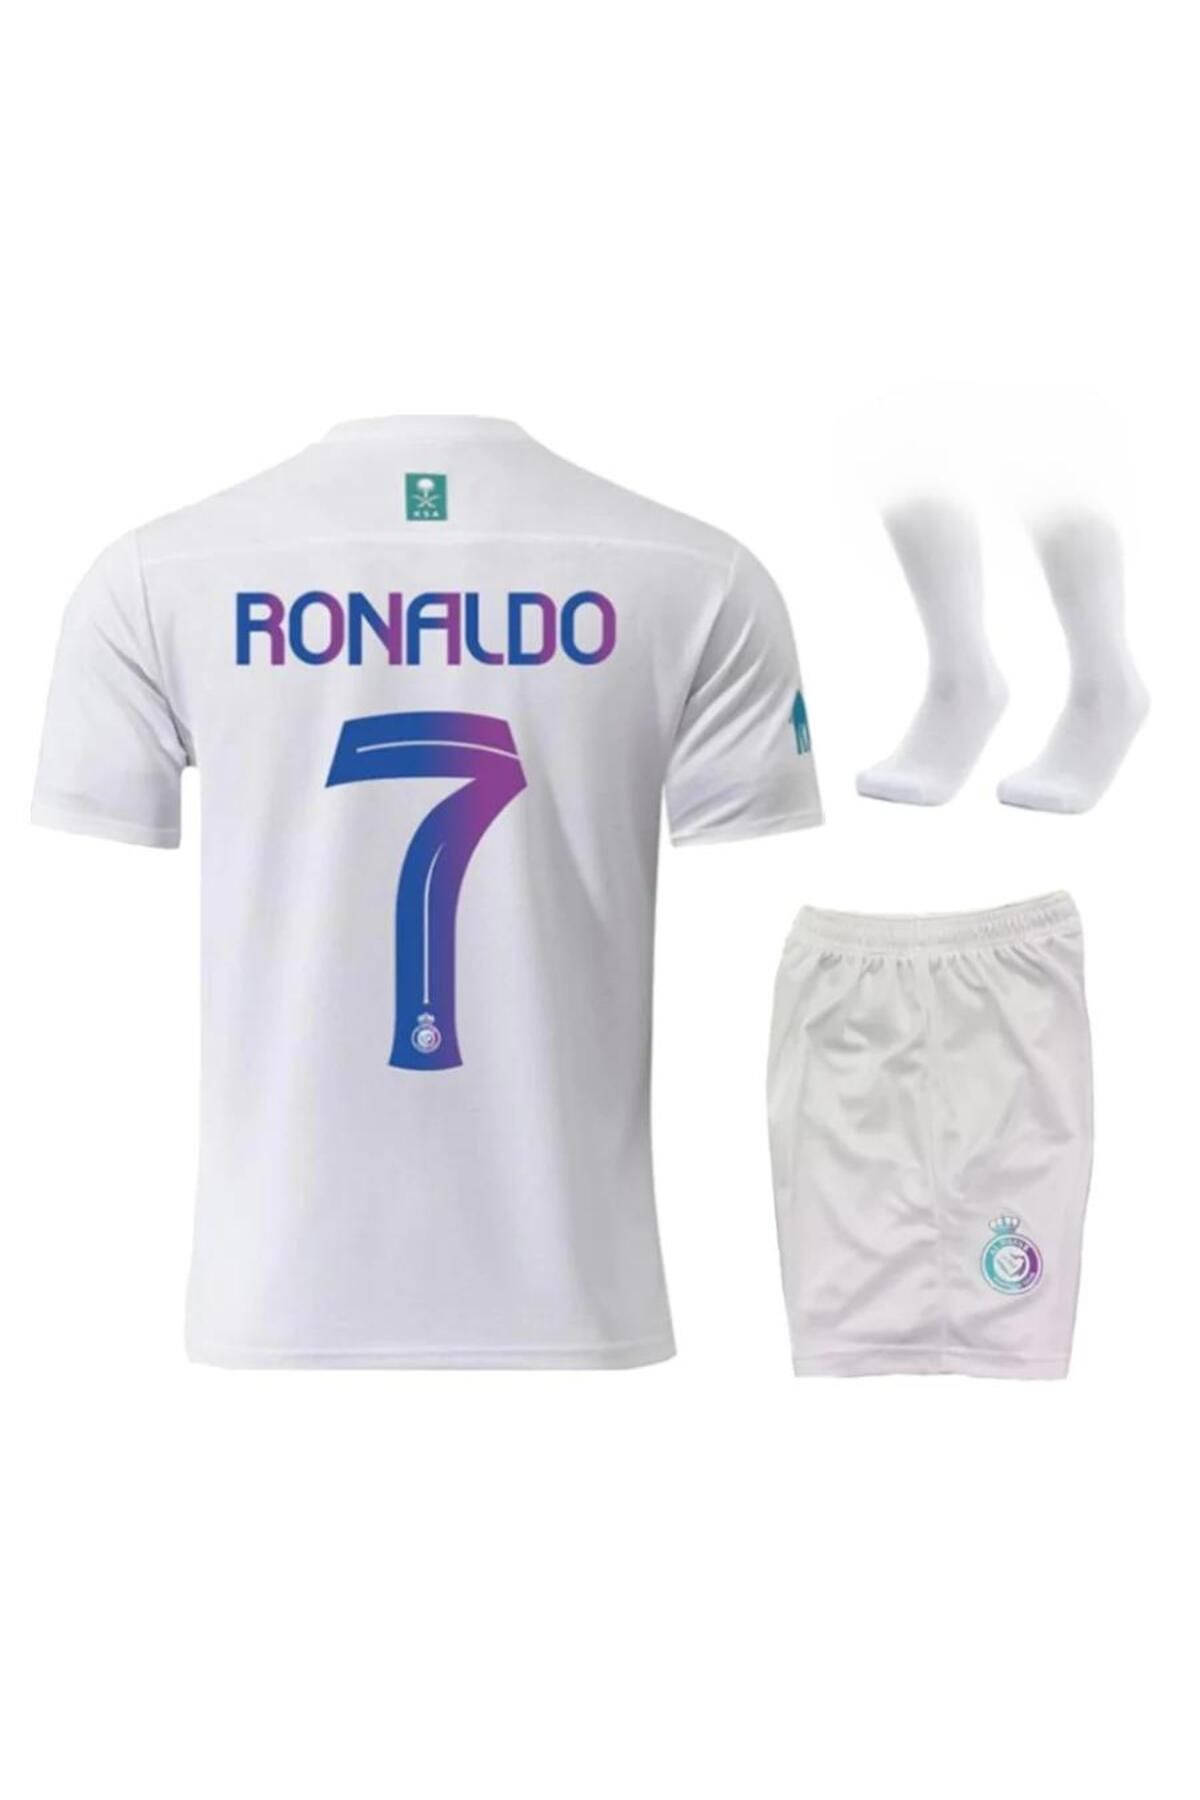 Alaturka Mix Al Nassr Ronaldo Yeni Sezon Çocuk Futbol Forması Forma-şort-çorap 3'lü Takım 2023/24 Özel Tasarım